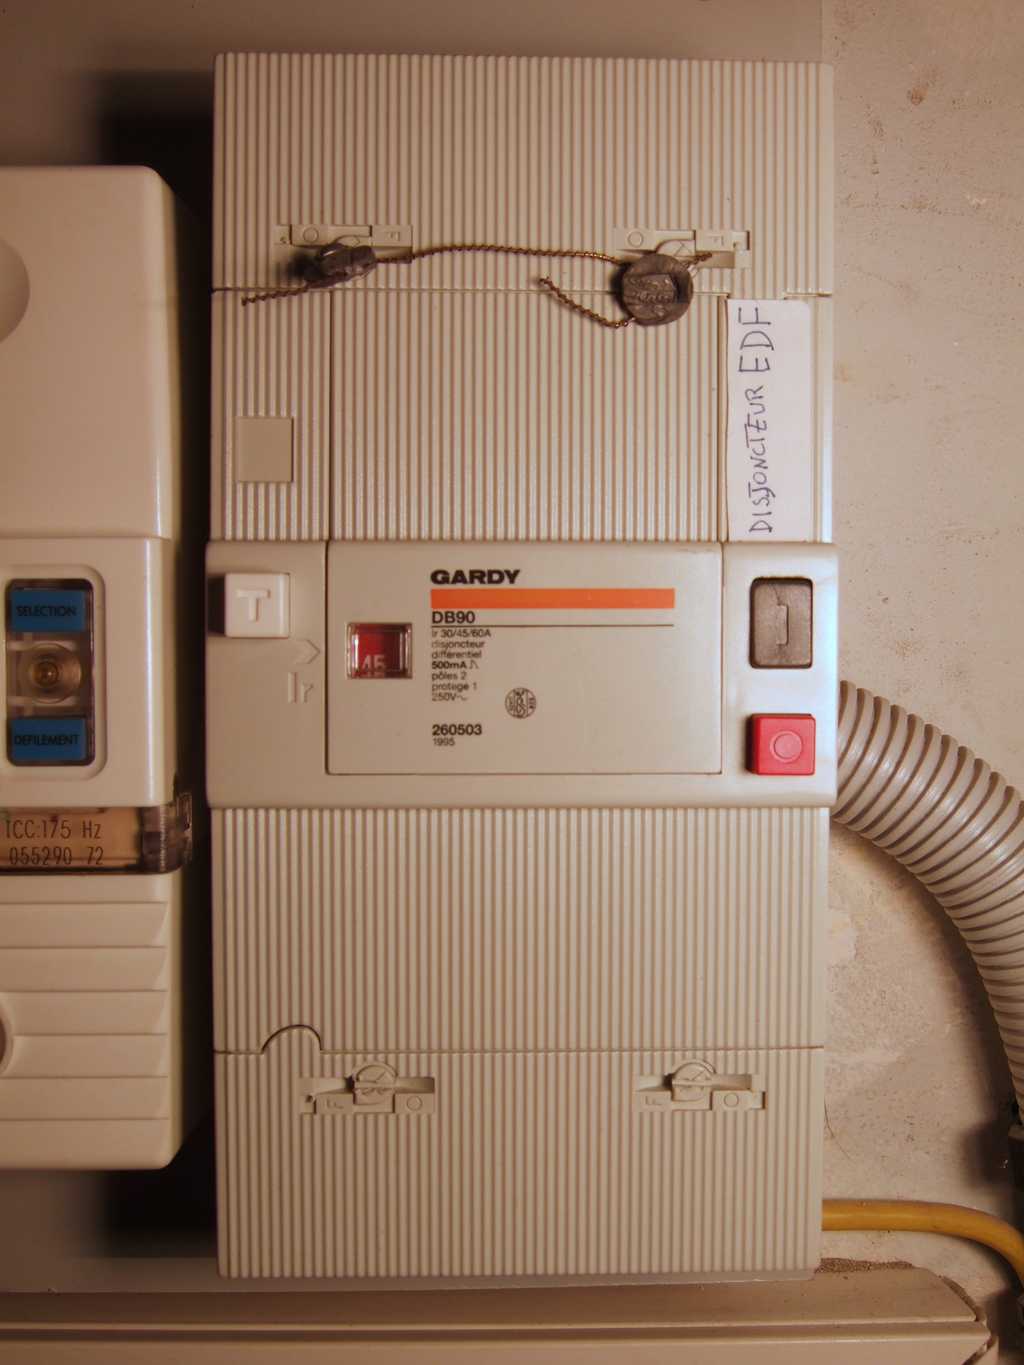 Le disjoncteur différentiel protège (aussi) une installation électrique contre les appareils défectueux qui pourraient provoquer des électrocutions. © Domaine public